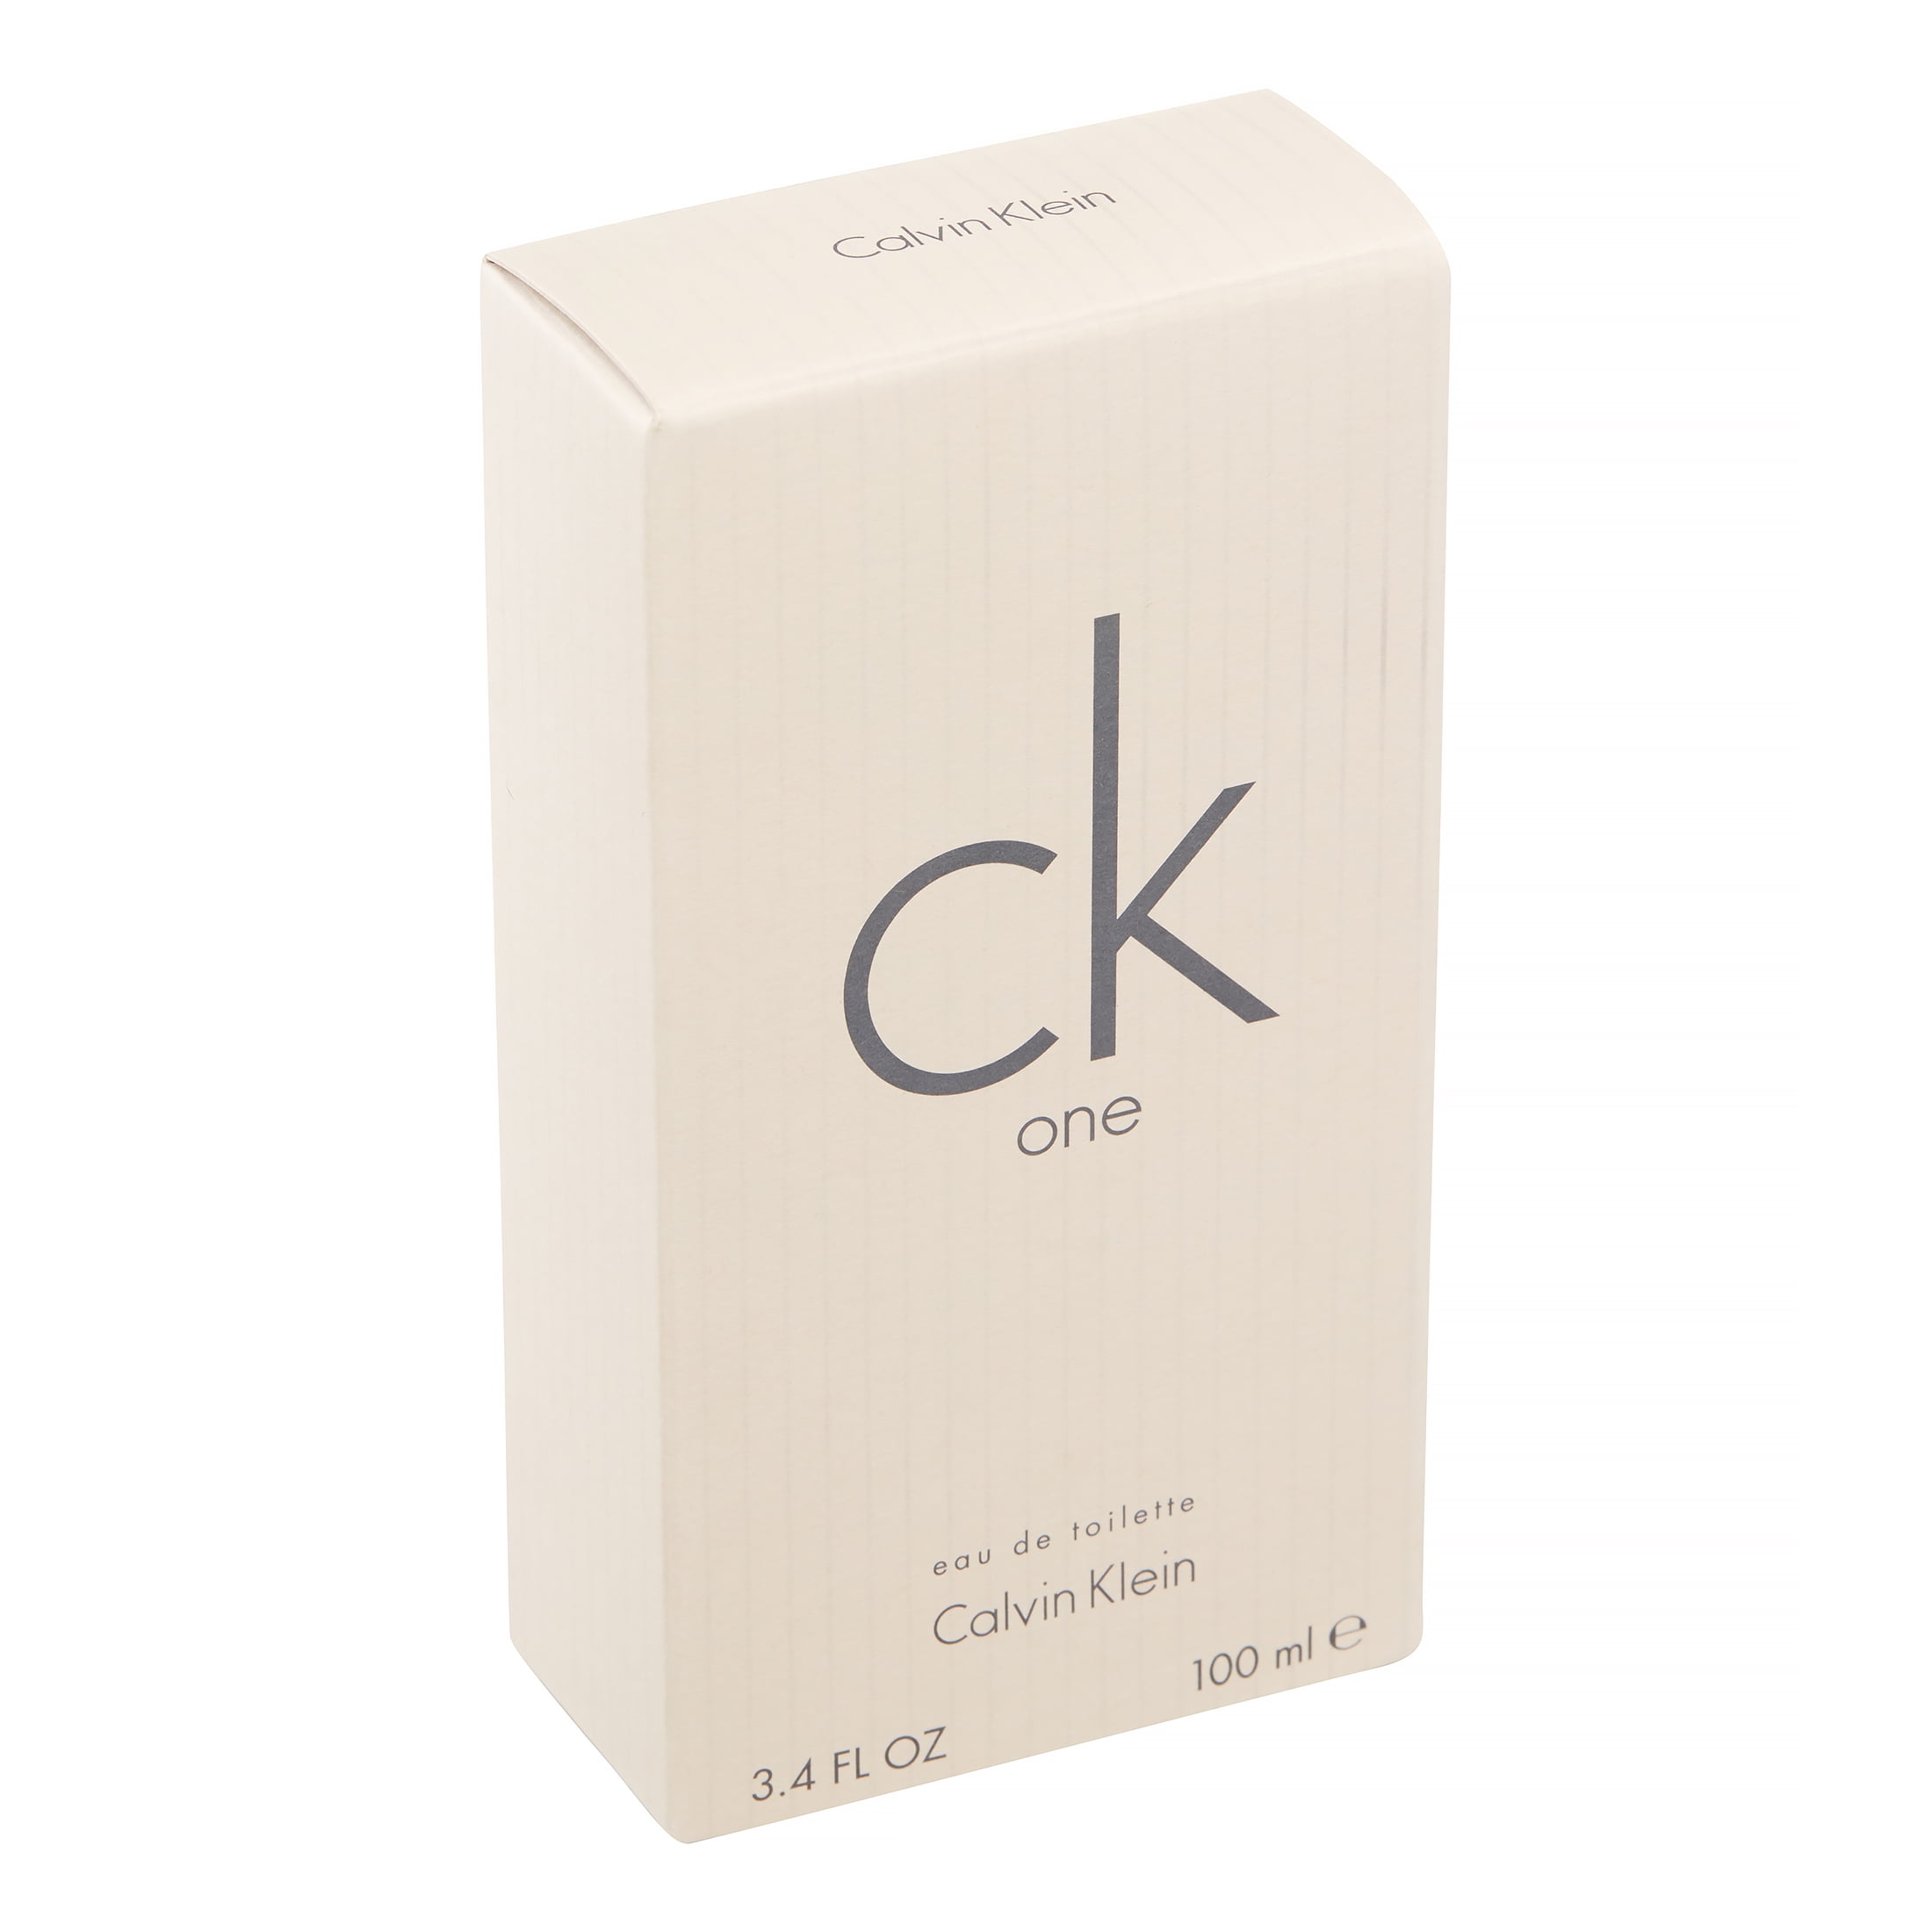 Ck One Unissex 100ml - Calvin Klein - Dtsinfocellrp